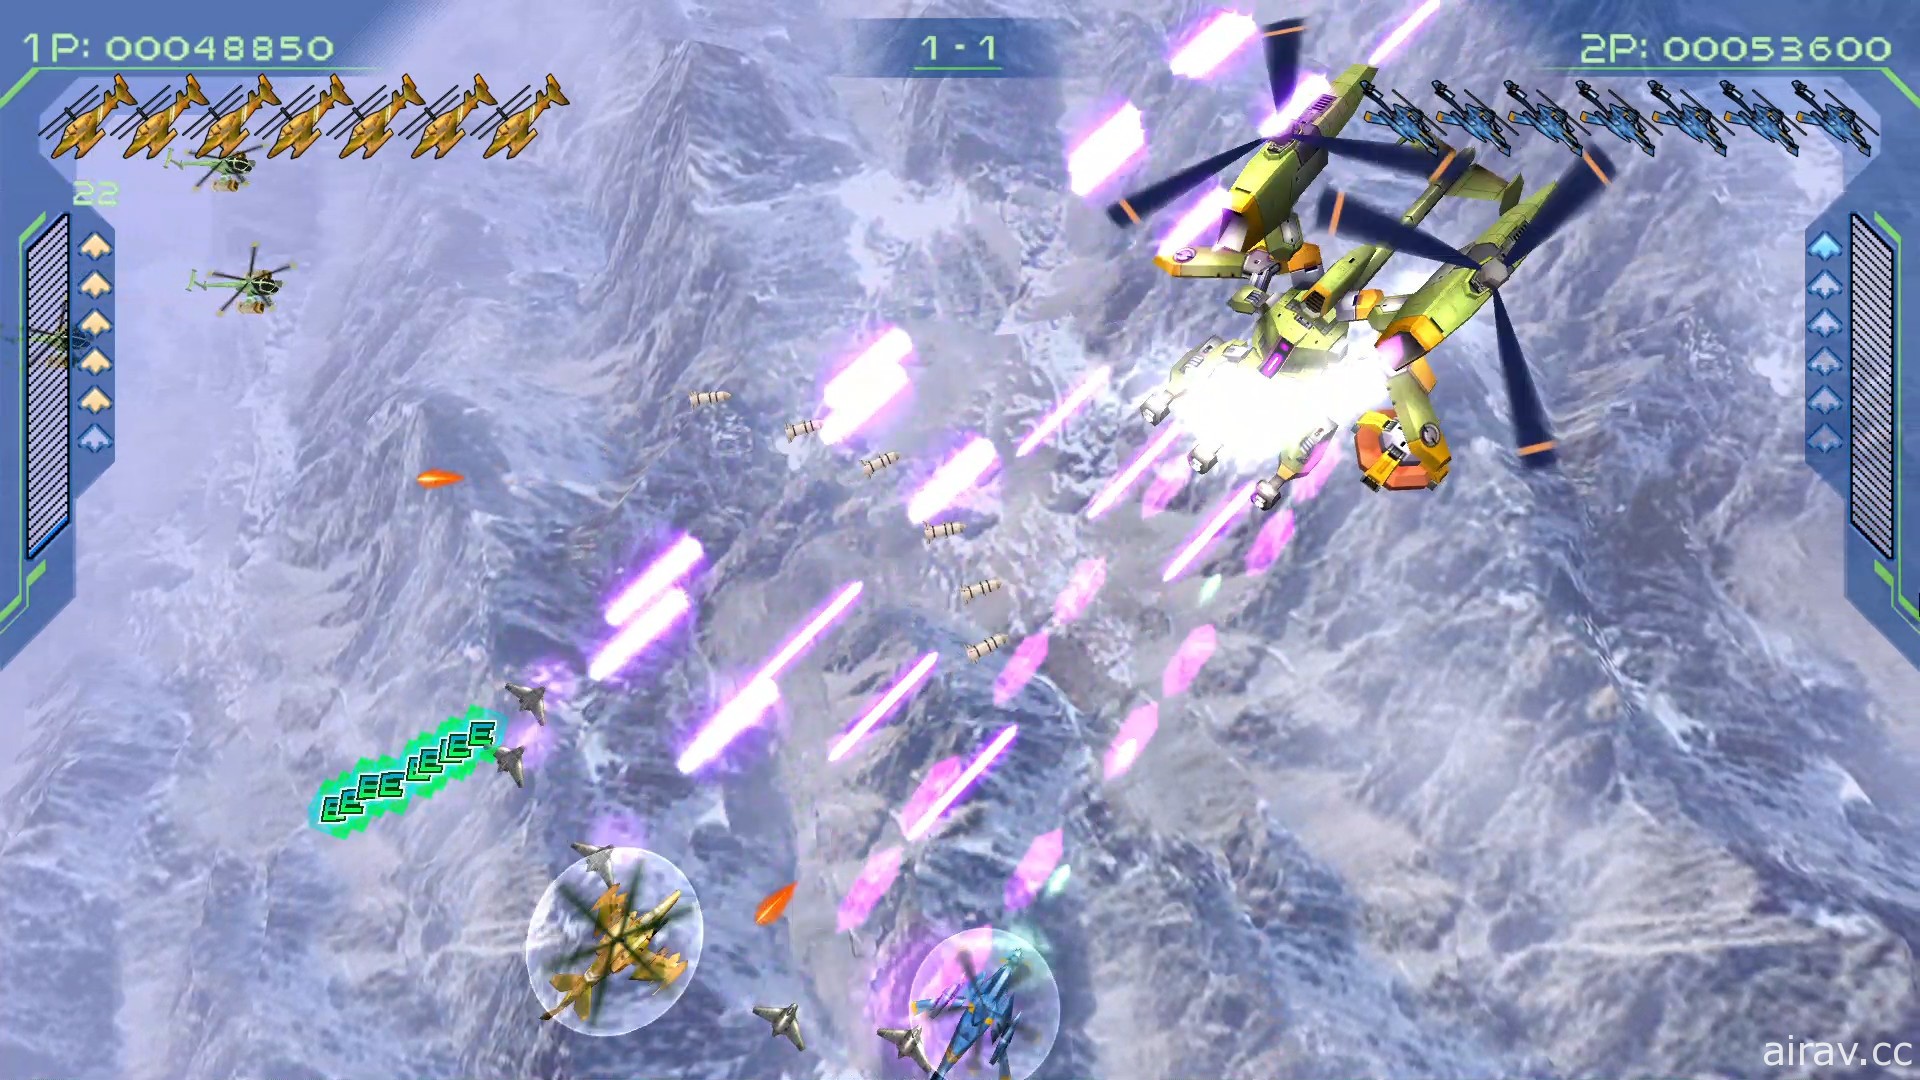 彩京品牌射擊遊戲《零式戰機 2》PC 版 12 月在 Steam 平台上市